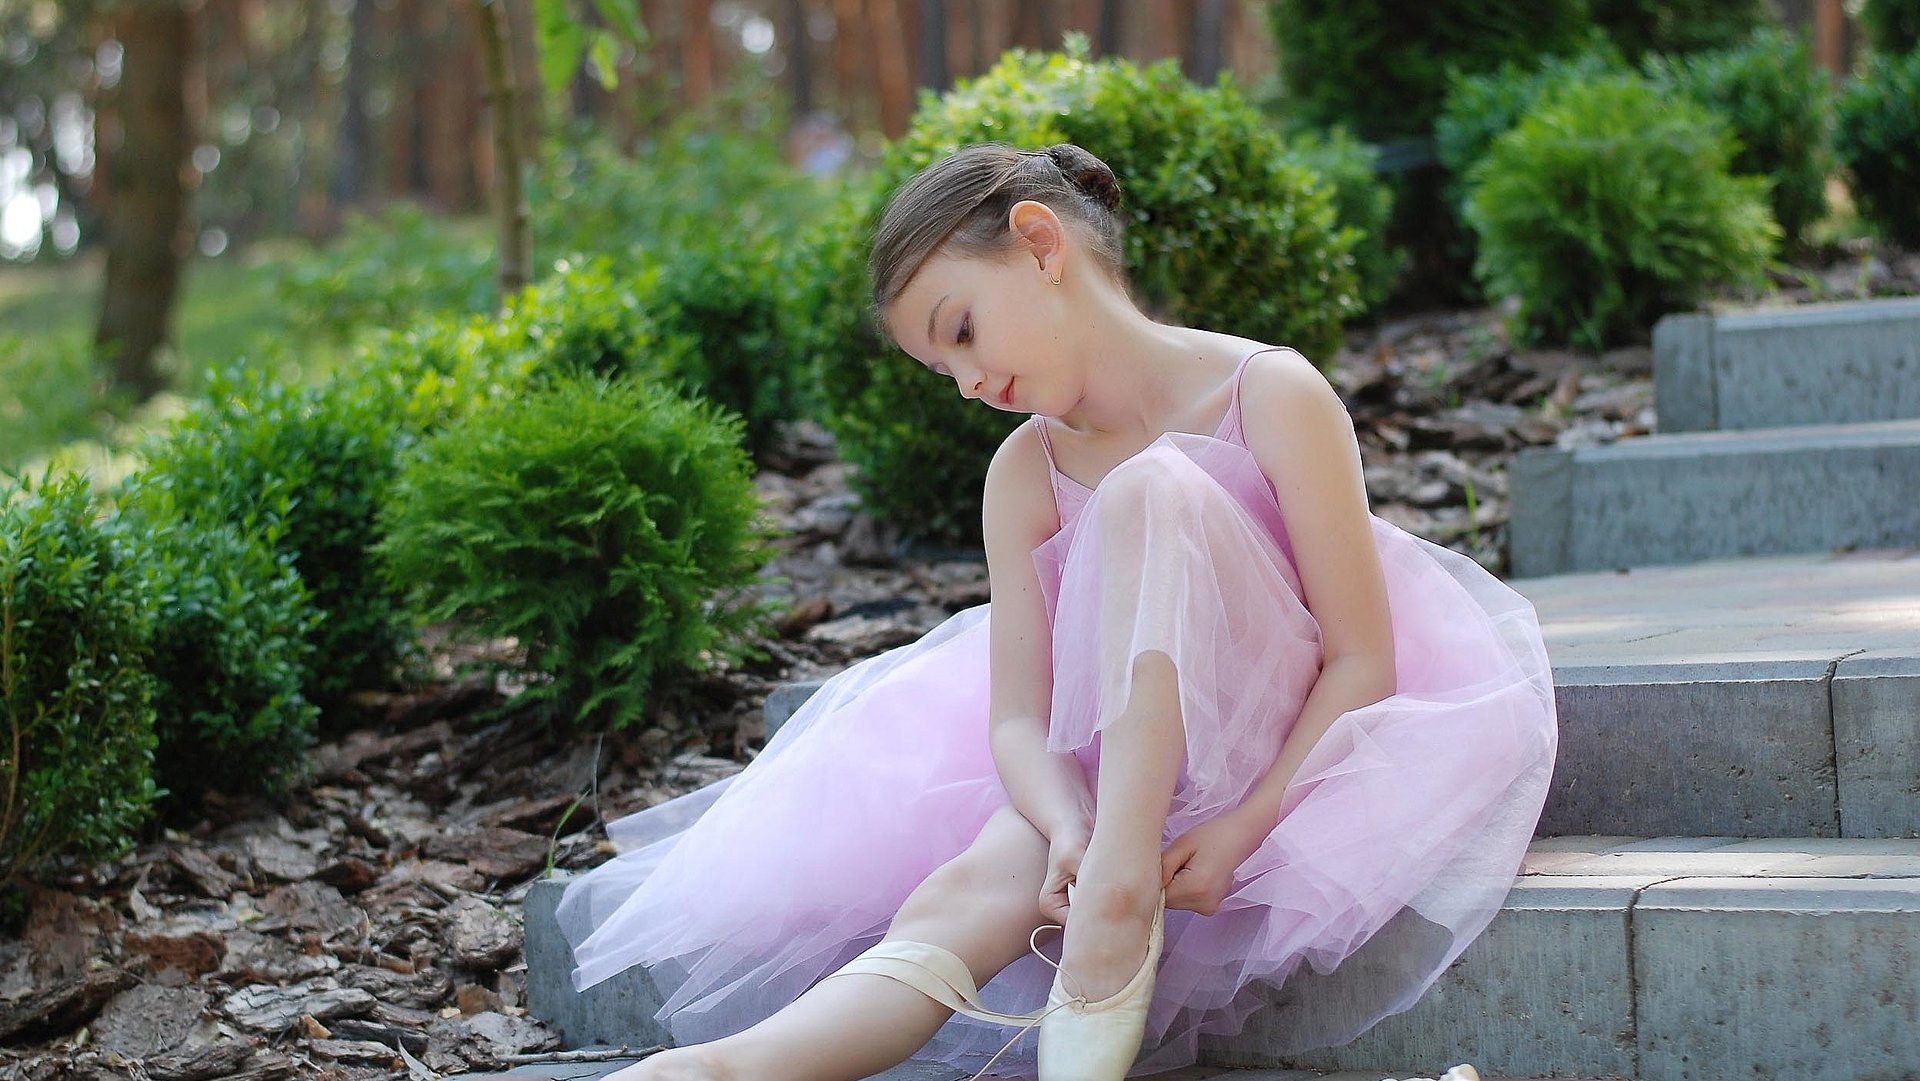 Kinderfreundliche Gastronomie im Fränkischen Seenland - Restaurants und Gaststätten für die gesamte Familie - kleines Mädchen im rosa Ballettkleid sitzt auf Treppe und richtet ihre Schuhe